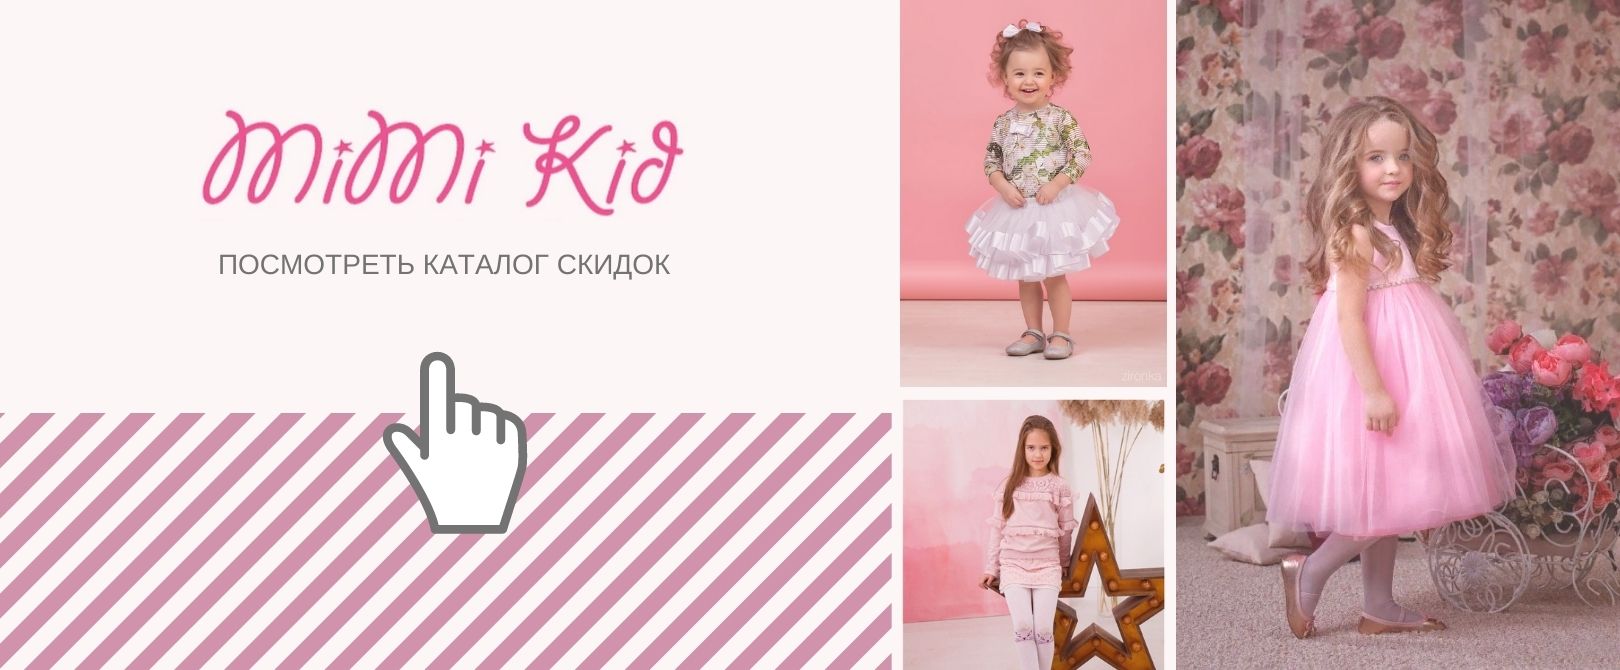 МИМИКИД интернет-магазина детской одежды